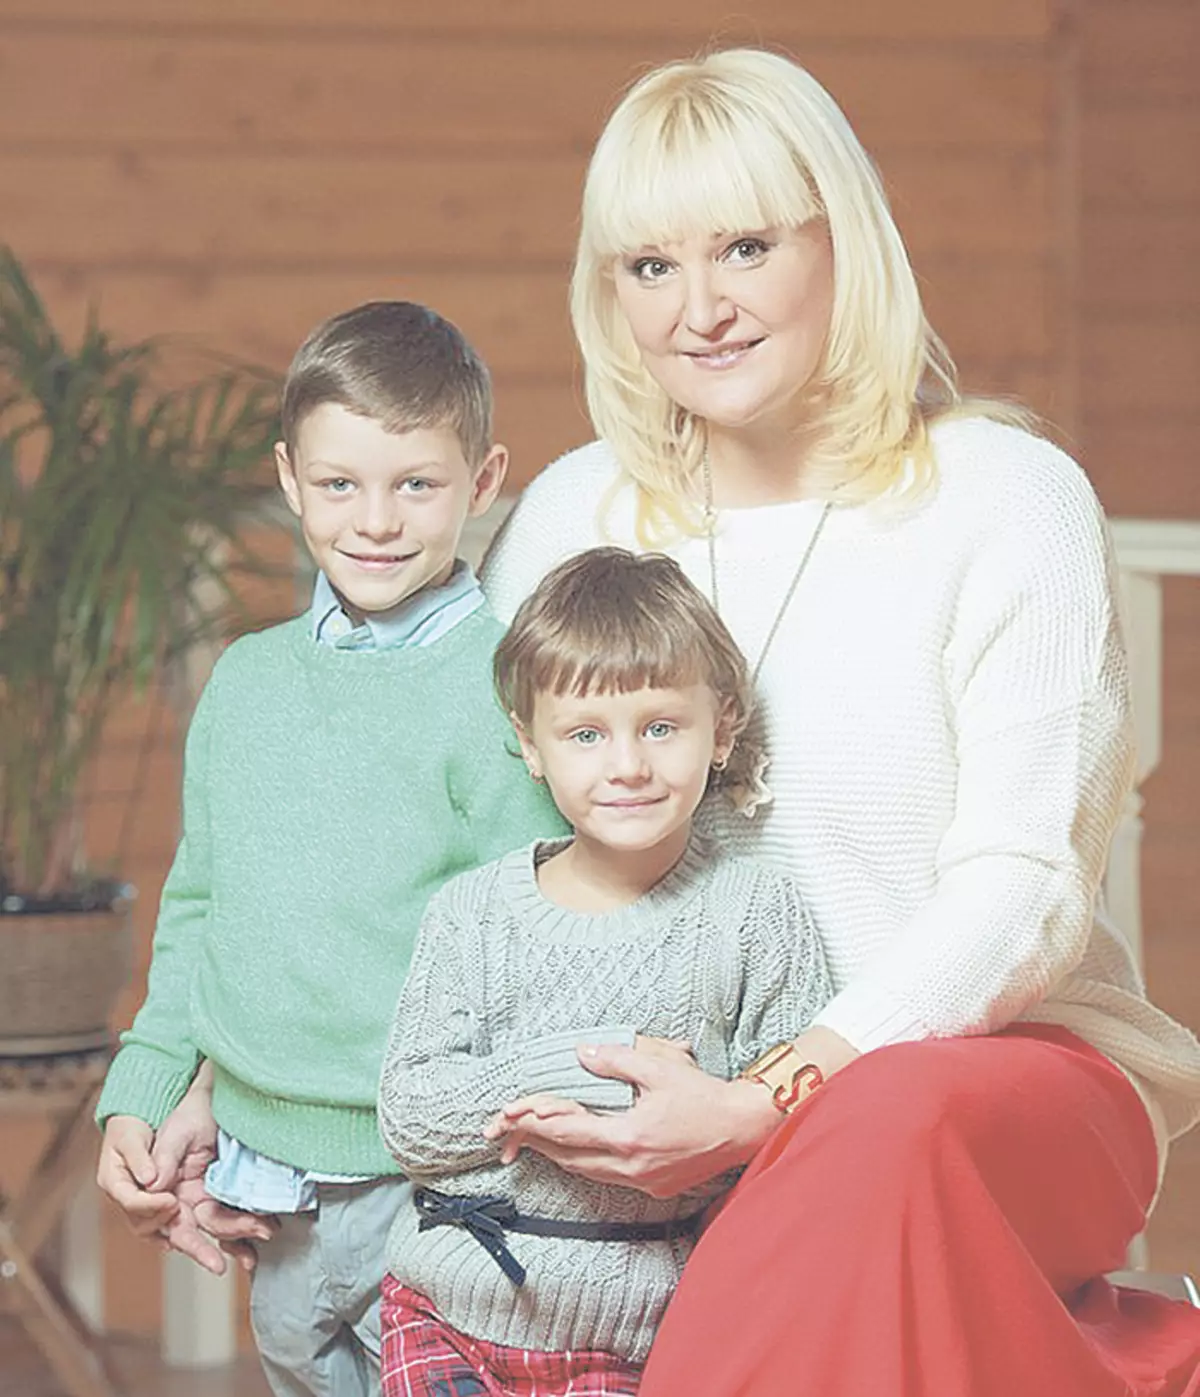 2013 m. Margarita tapo puoselėjančia mama trejų metų Valerijai ir ketverių metų Sergejui. Dainininkė daro viską, kad vaikai gautų puikų išsilavinimą